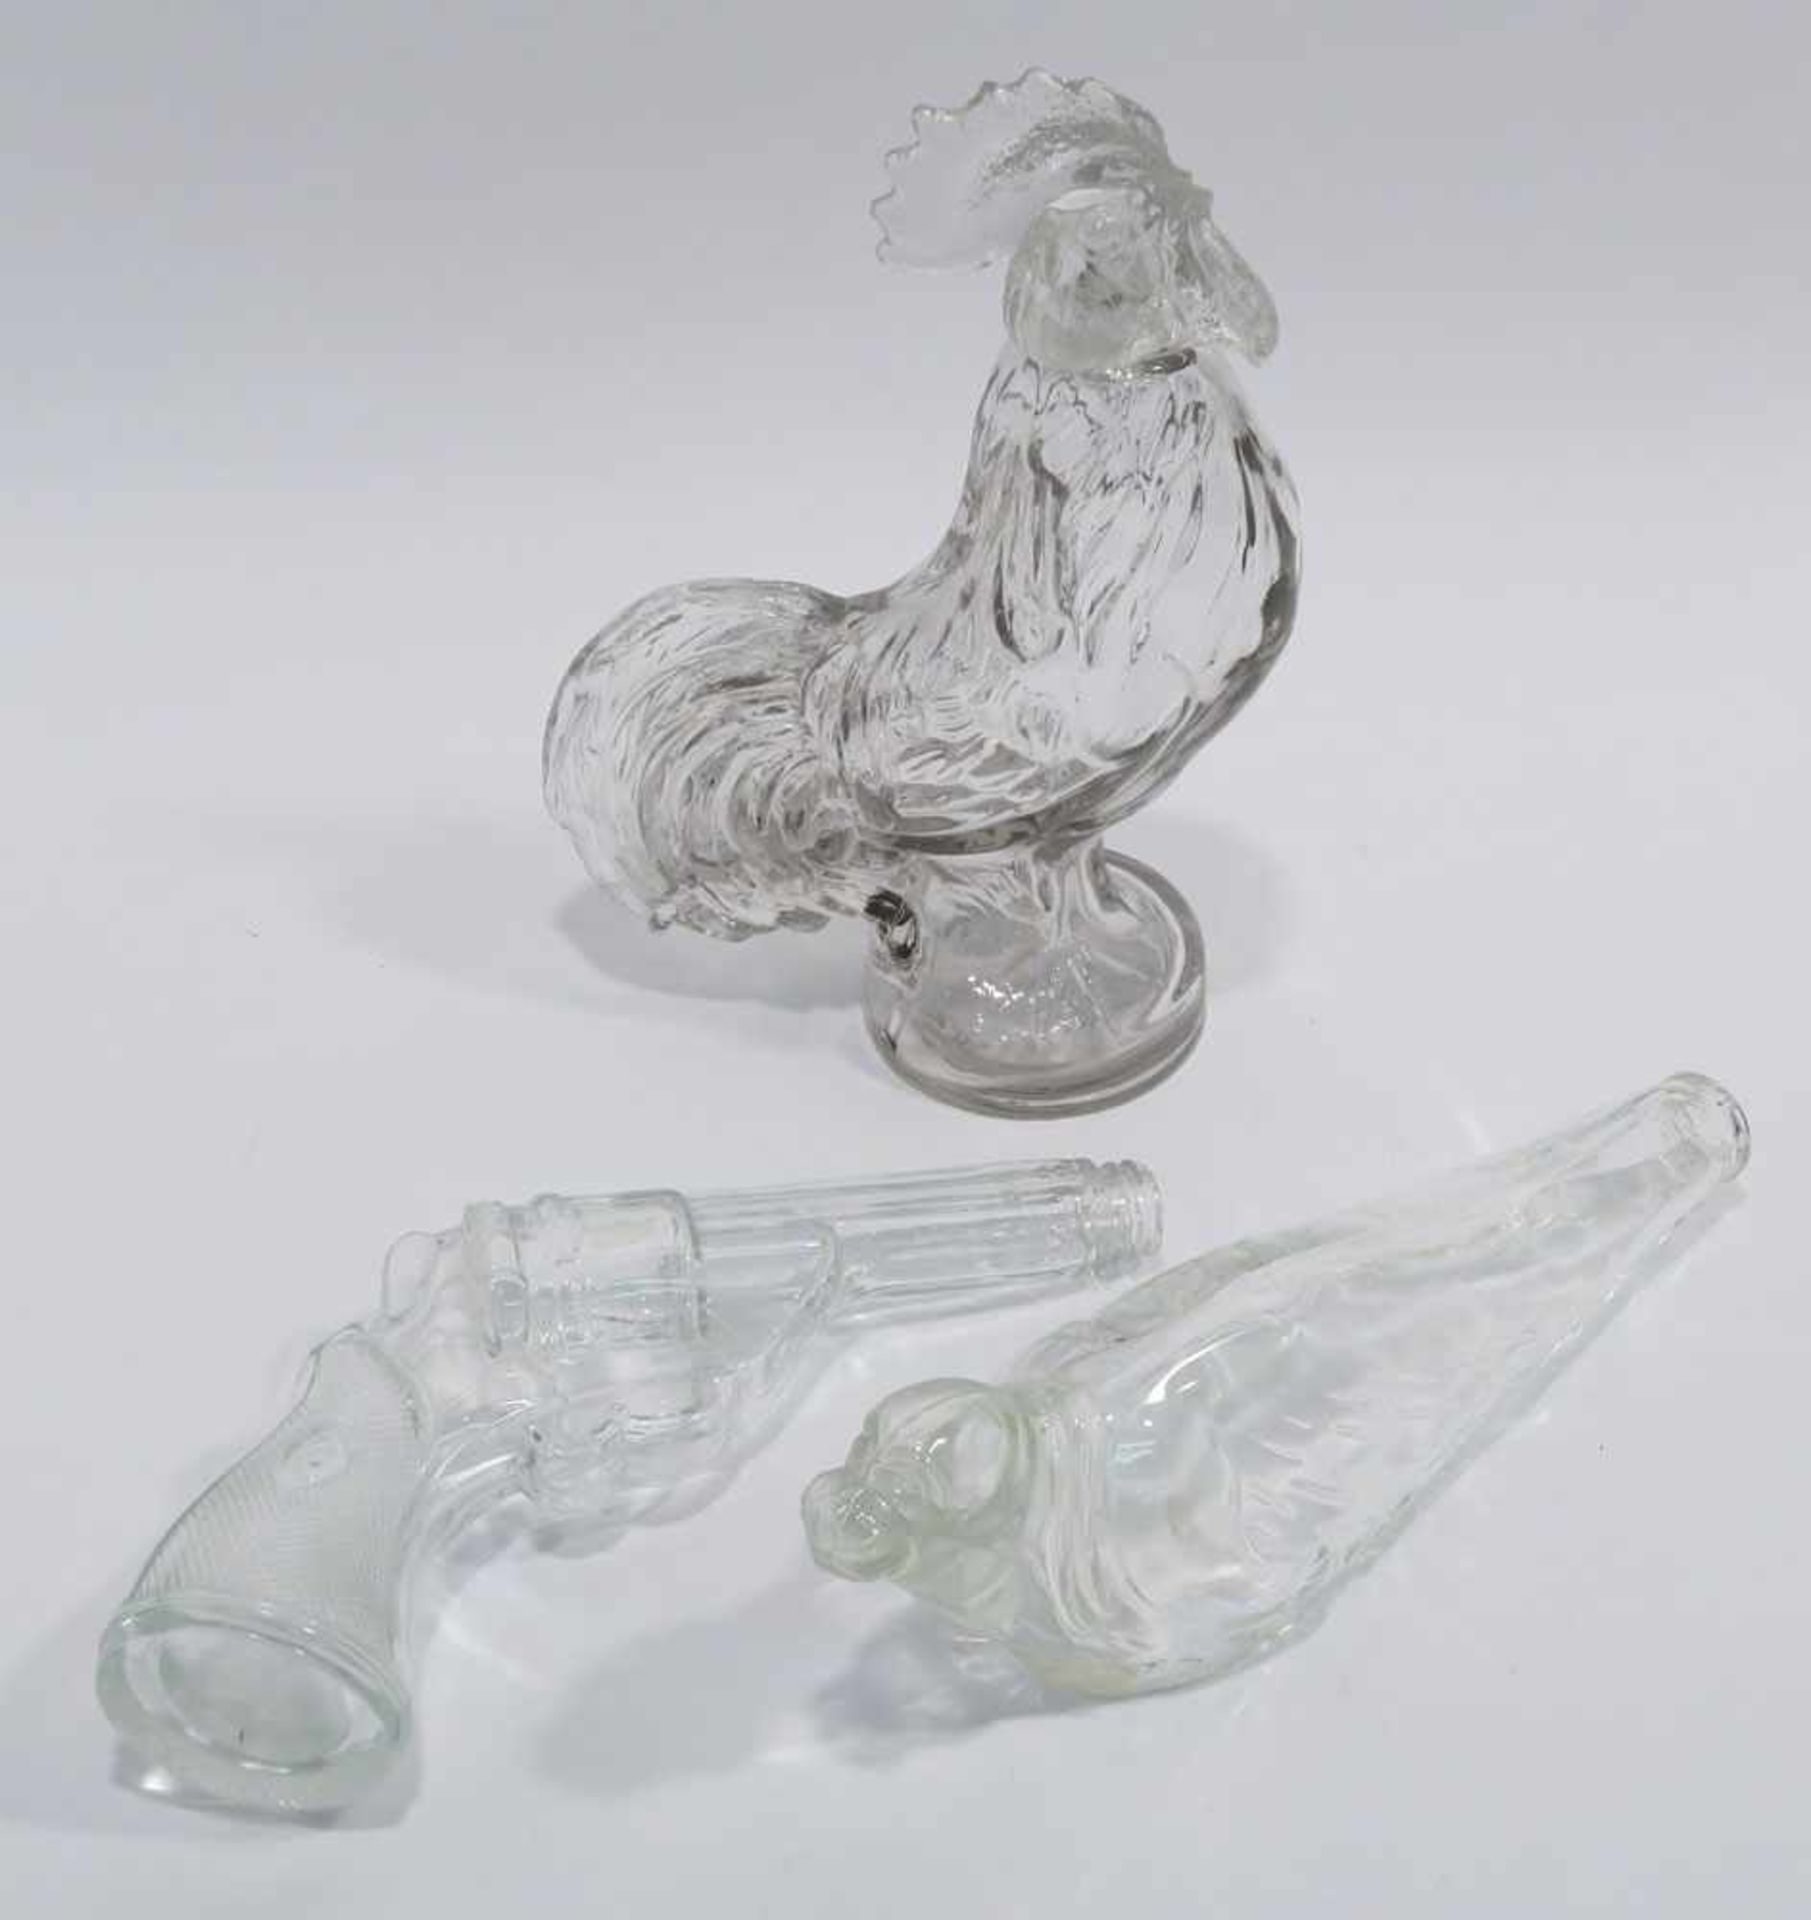 Drei Flaschen: Hahn / Pistole / RobbeFarbloses Pressglas. Tlw. best. H. 26 cm bzw. L. 26 cm und 27